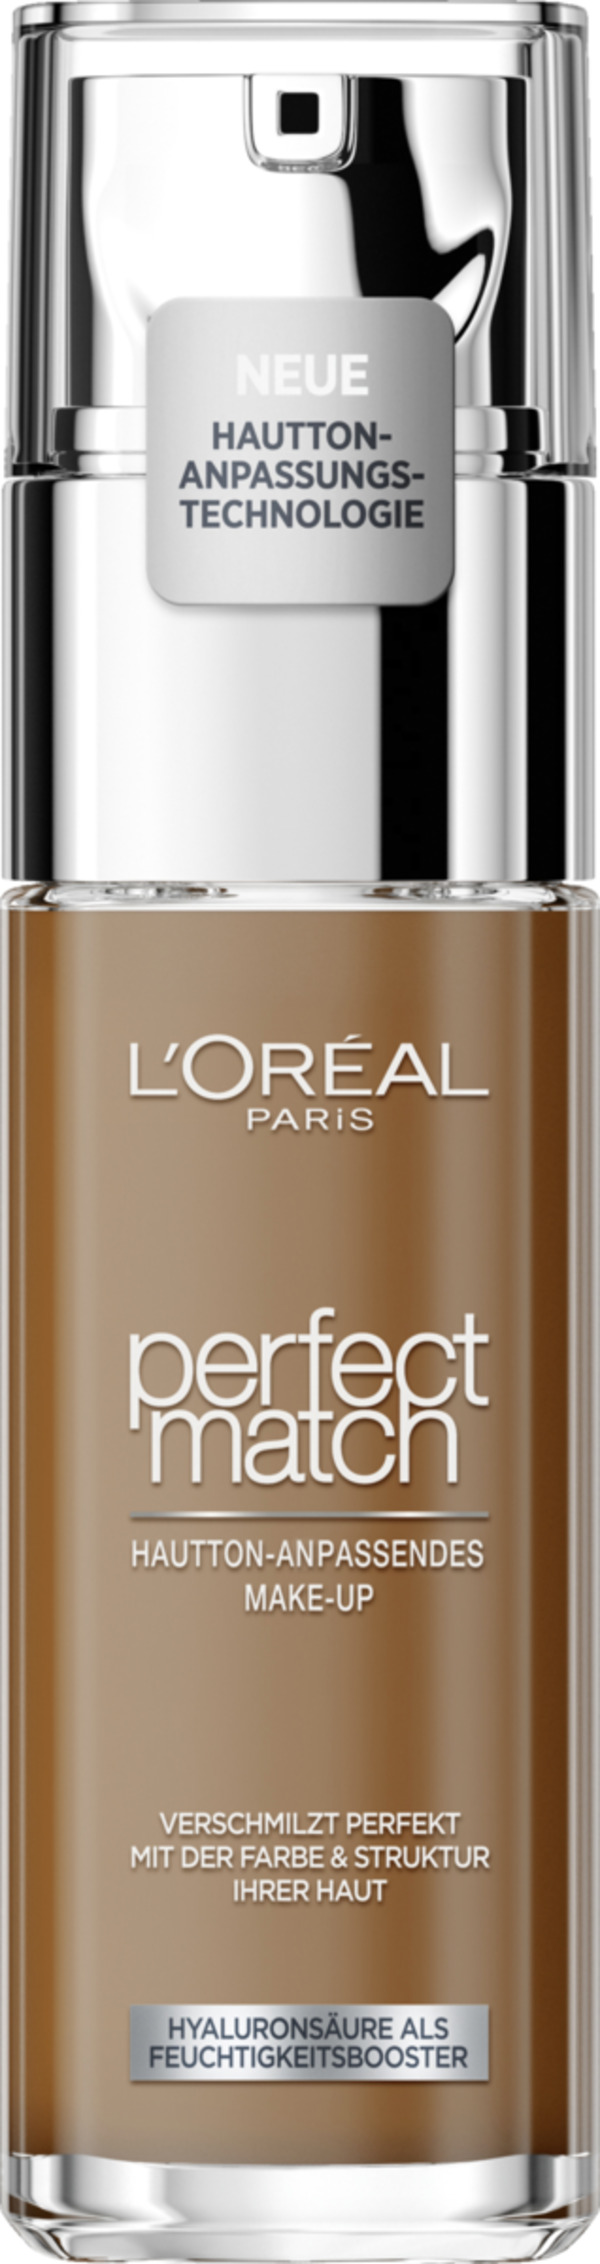 Bild 1 von L’Oréal Paris Perfect Match Perfect Match Make-Up 8.5 37.50 EUR/100 ml